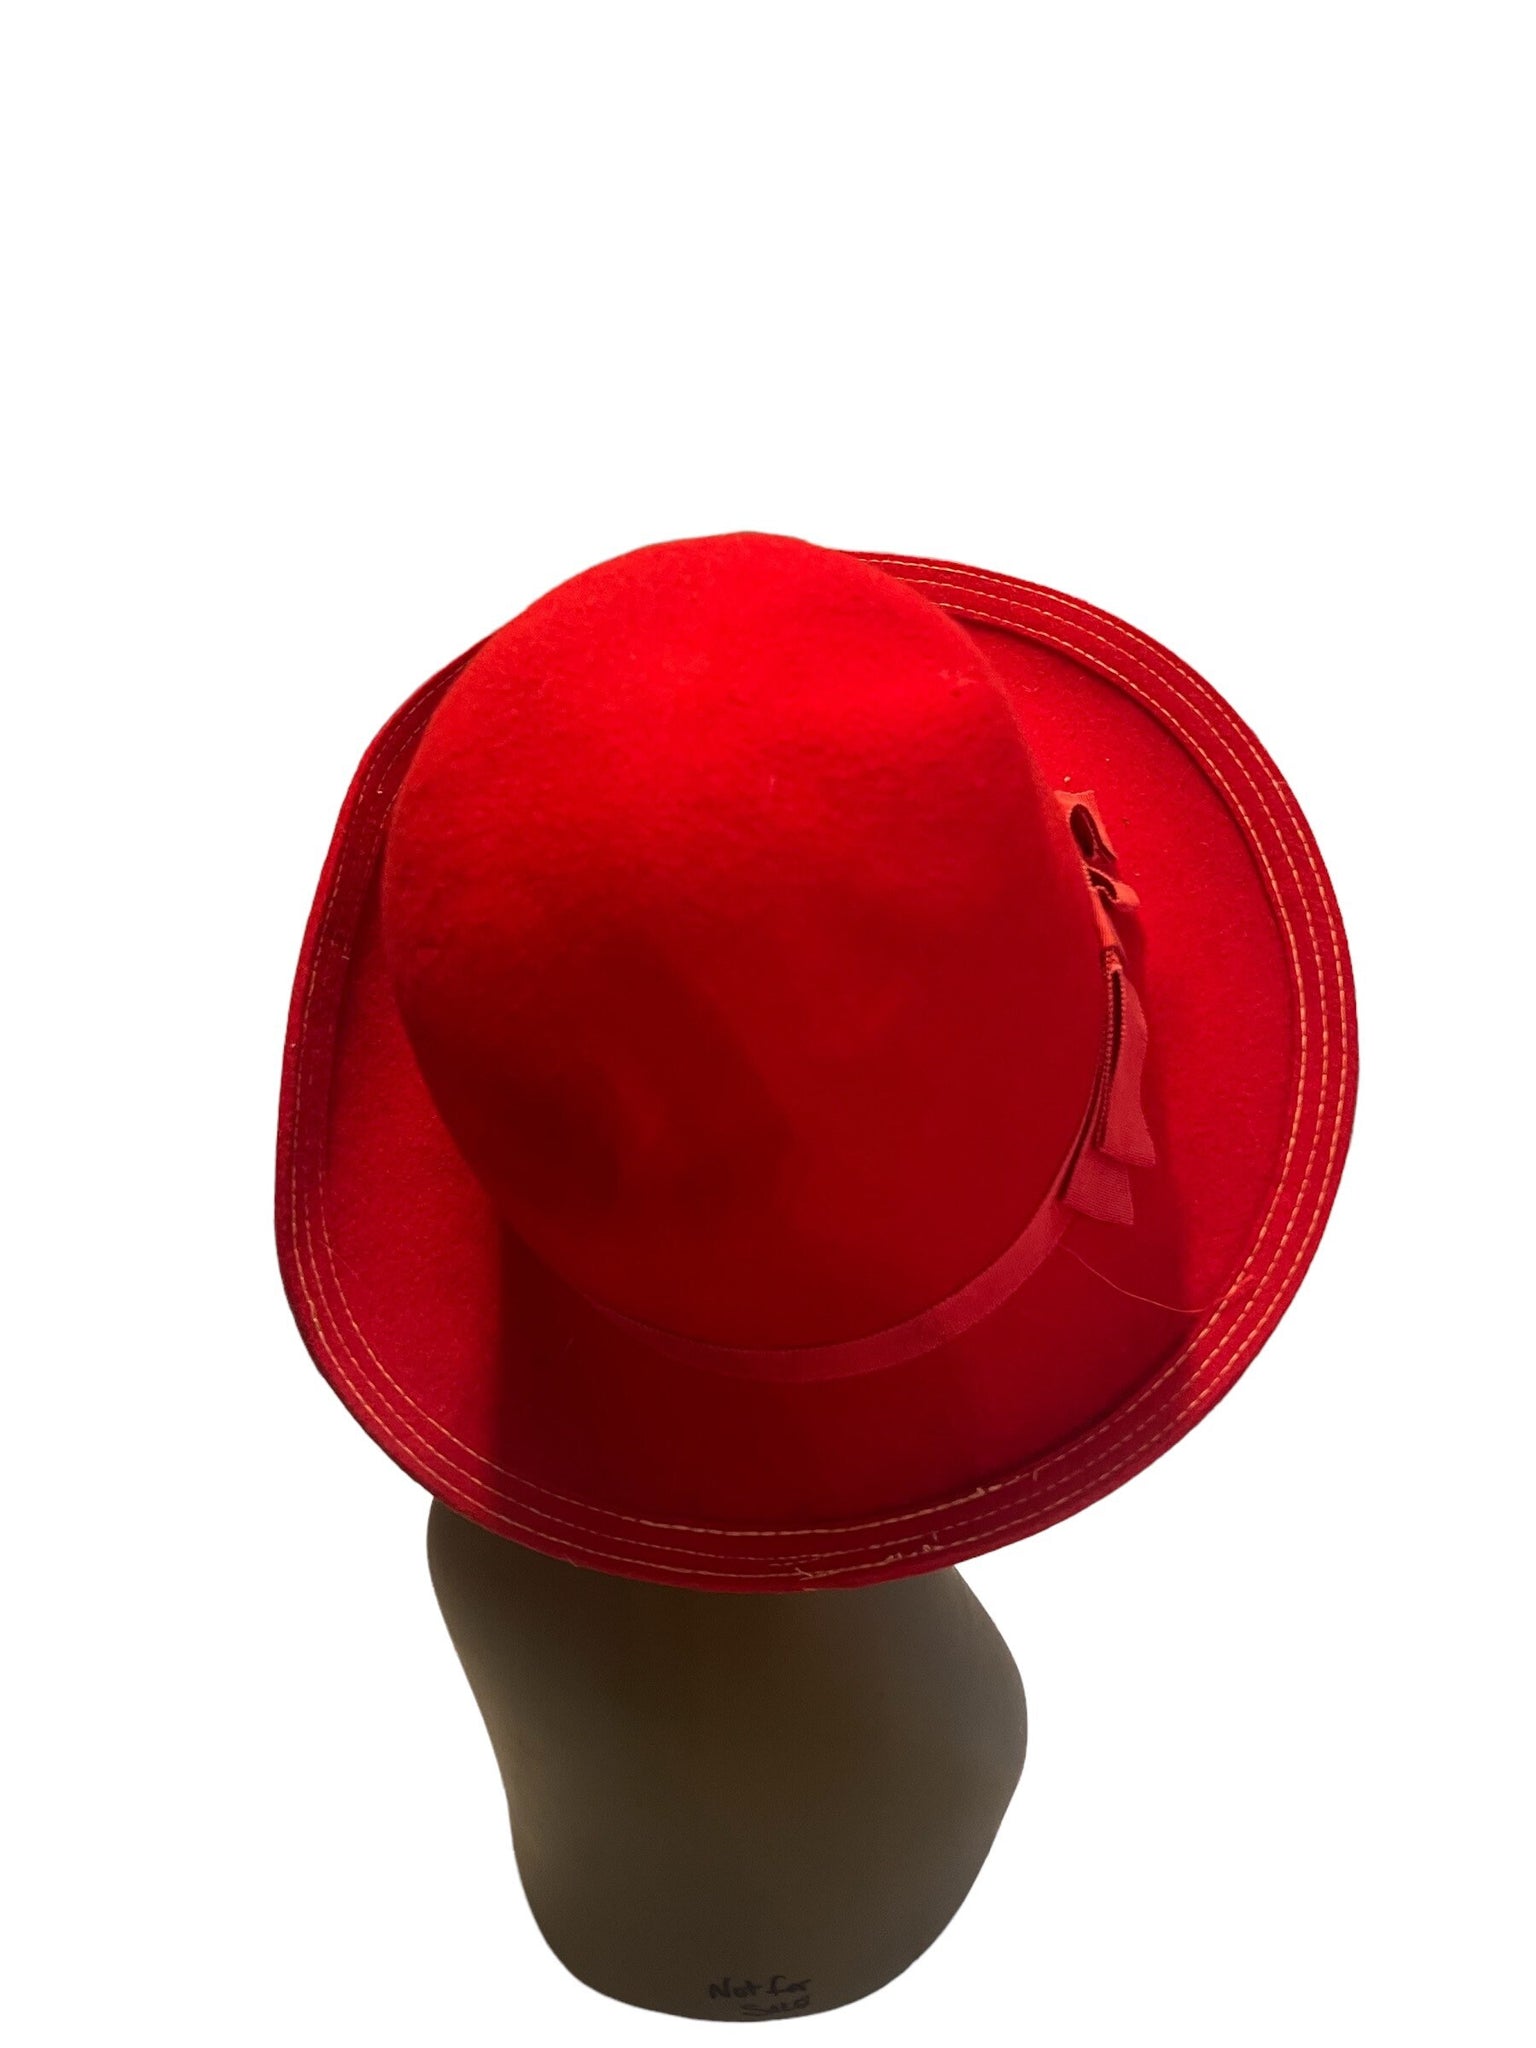 Vintage red wool hat